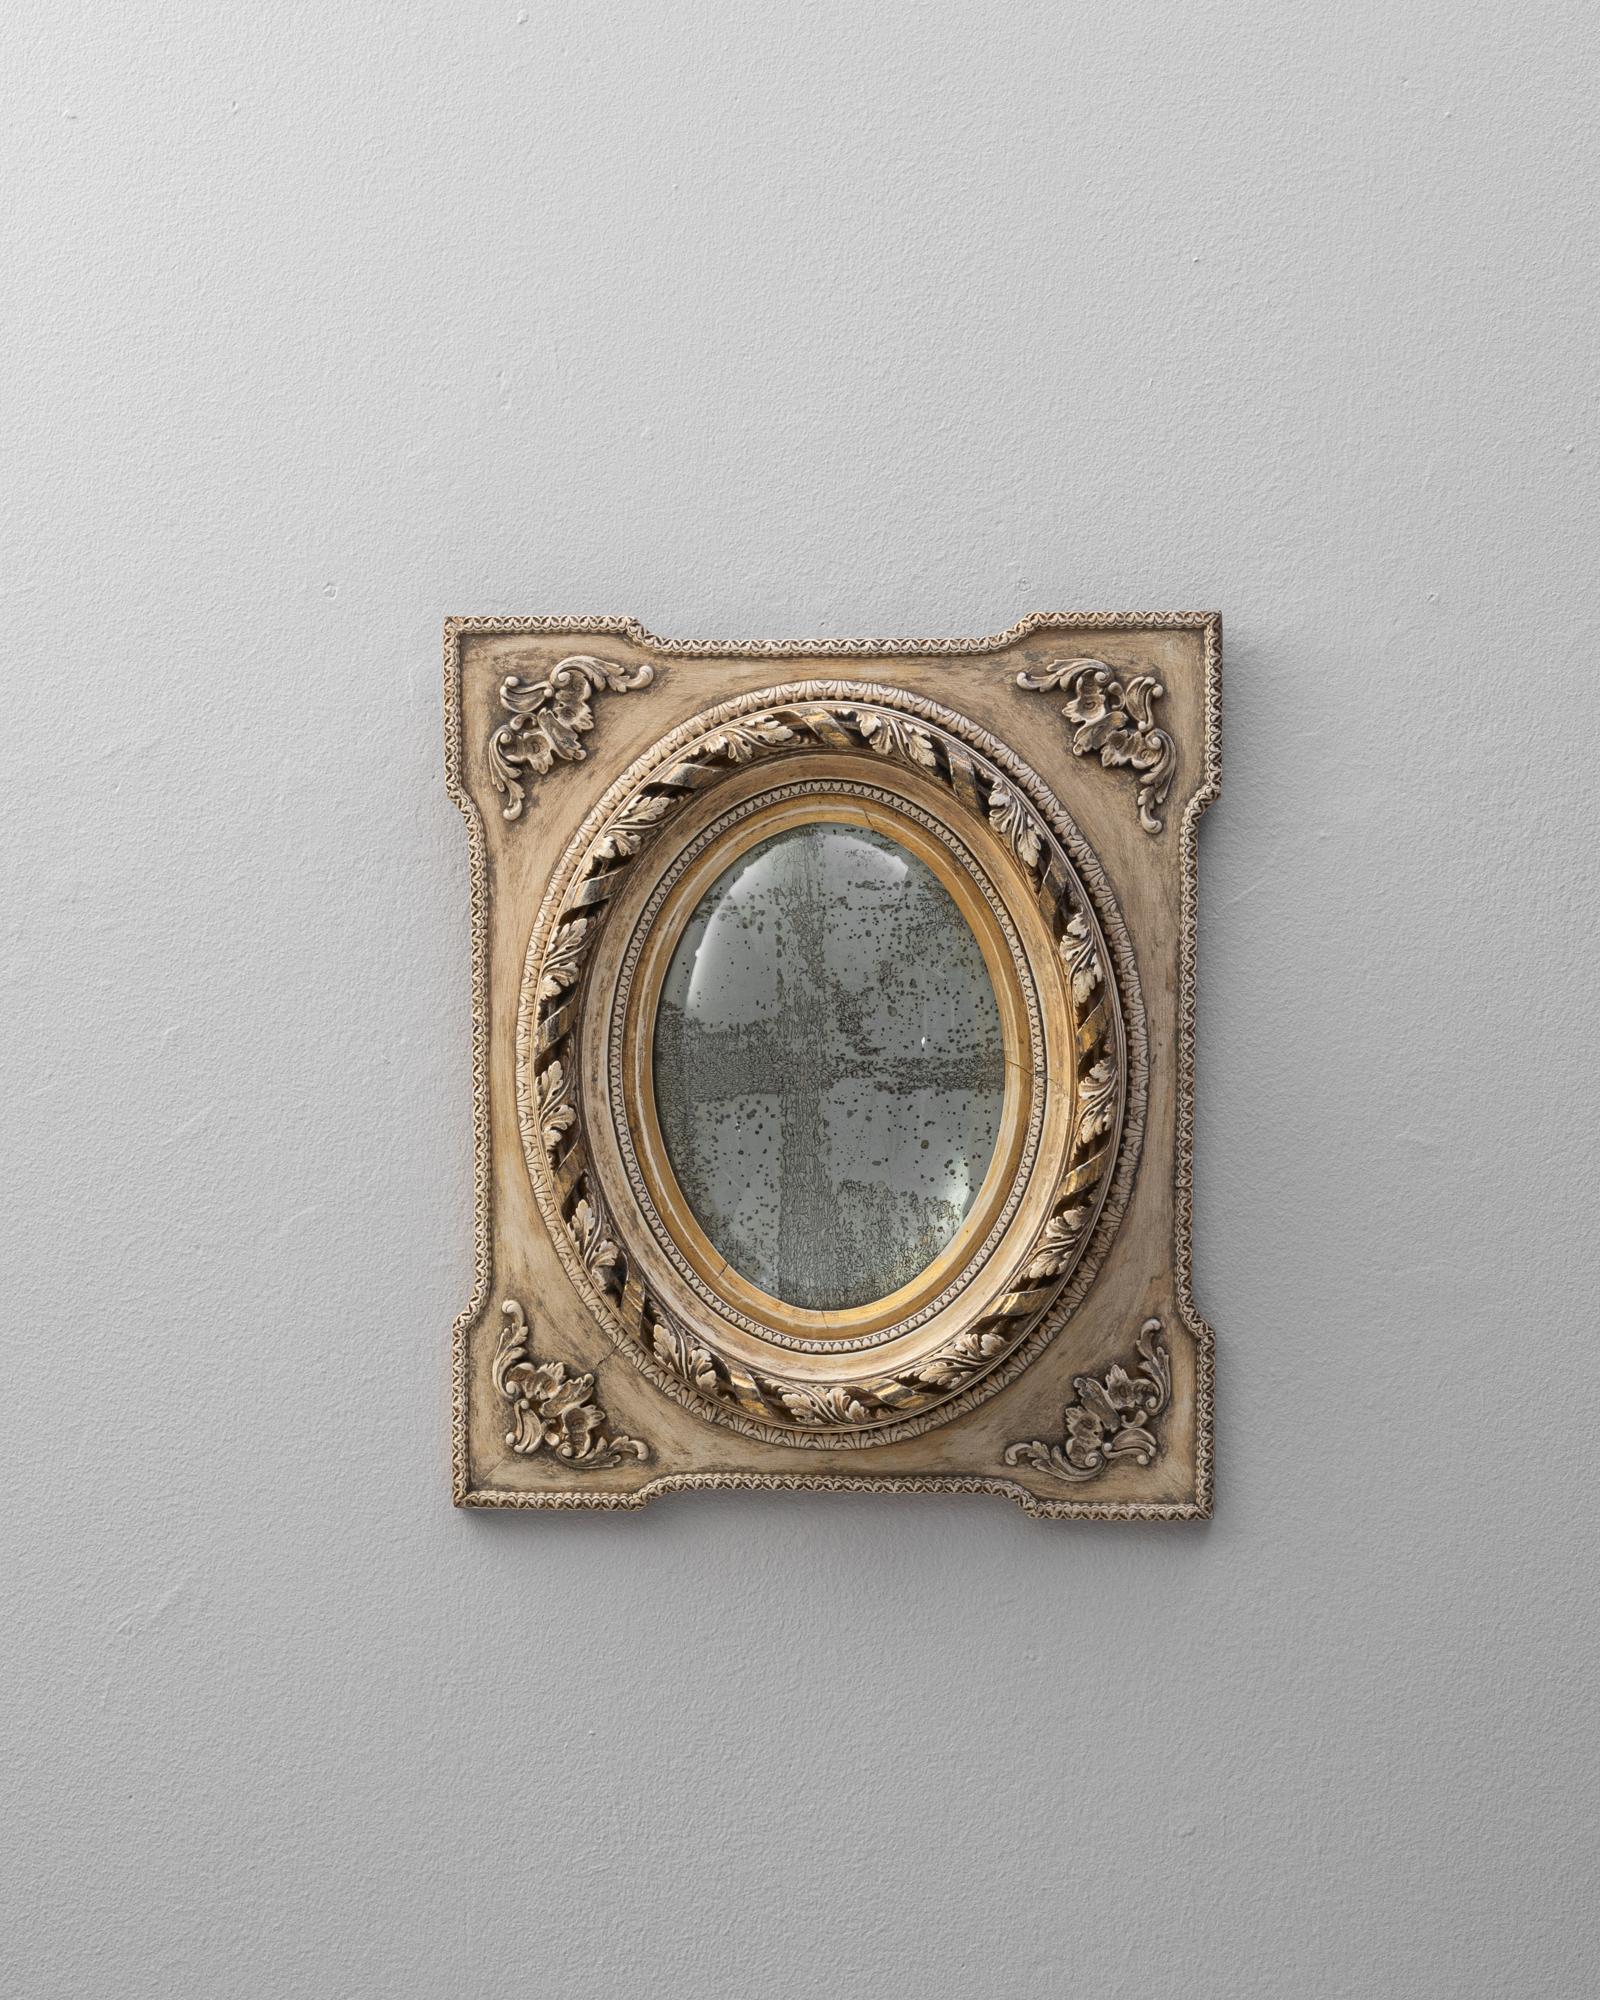 Dieser prächtige französische Spiegel aus dem 19. Jahrhundert, gerahmt in gebleichter Eiche, ist ein Meisterwerk an kunstvollem Design und zeitloser Eleganz. Das kunstvoll geschnitzte Blattwerk und die Akanthusblätter, die den Rahmen zieren,